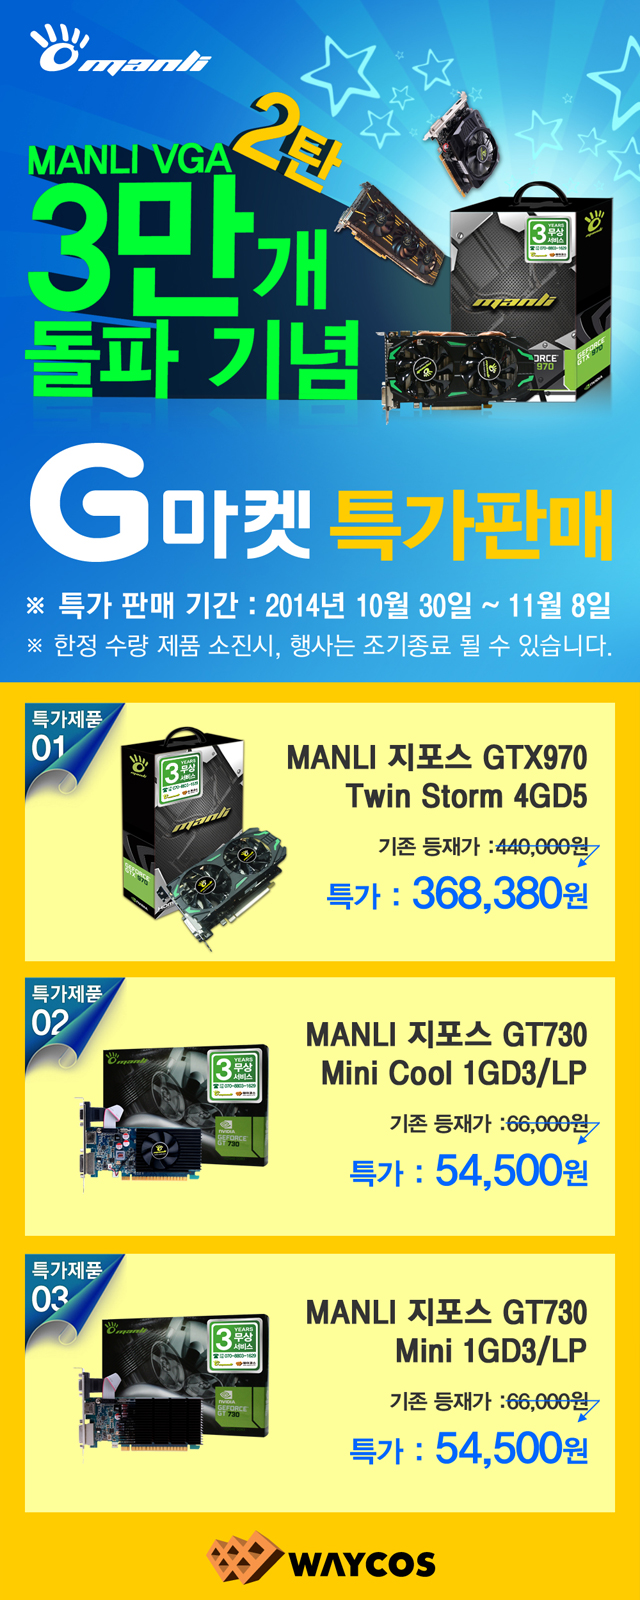 웨이코스, MANLI 그래픽카드 3만개 판매 돌파 기념 “G마켓 2차 특가판매” 진행